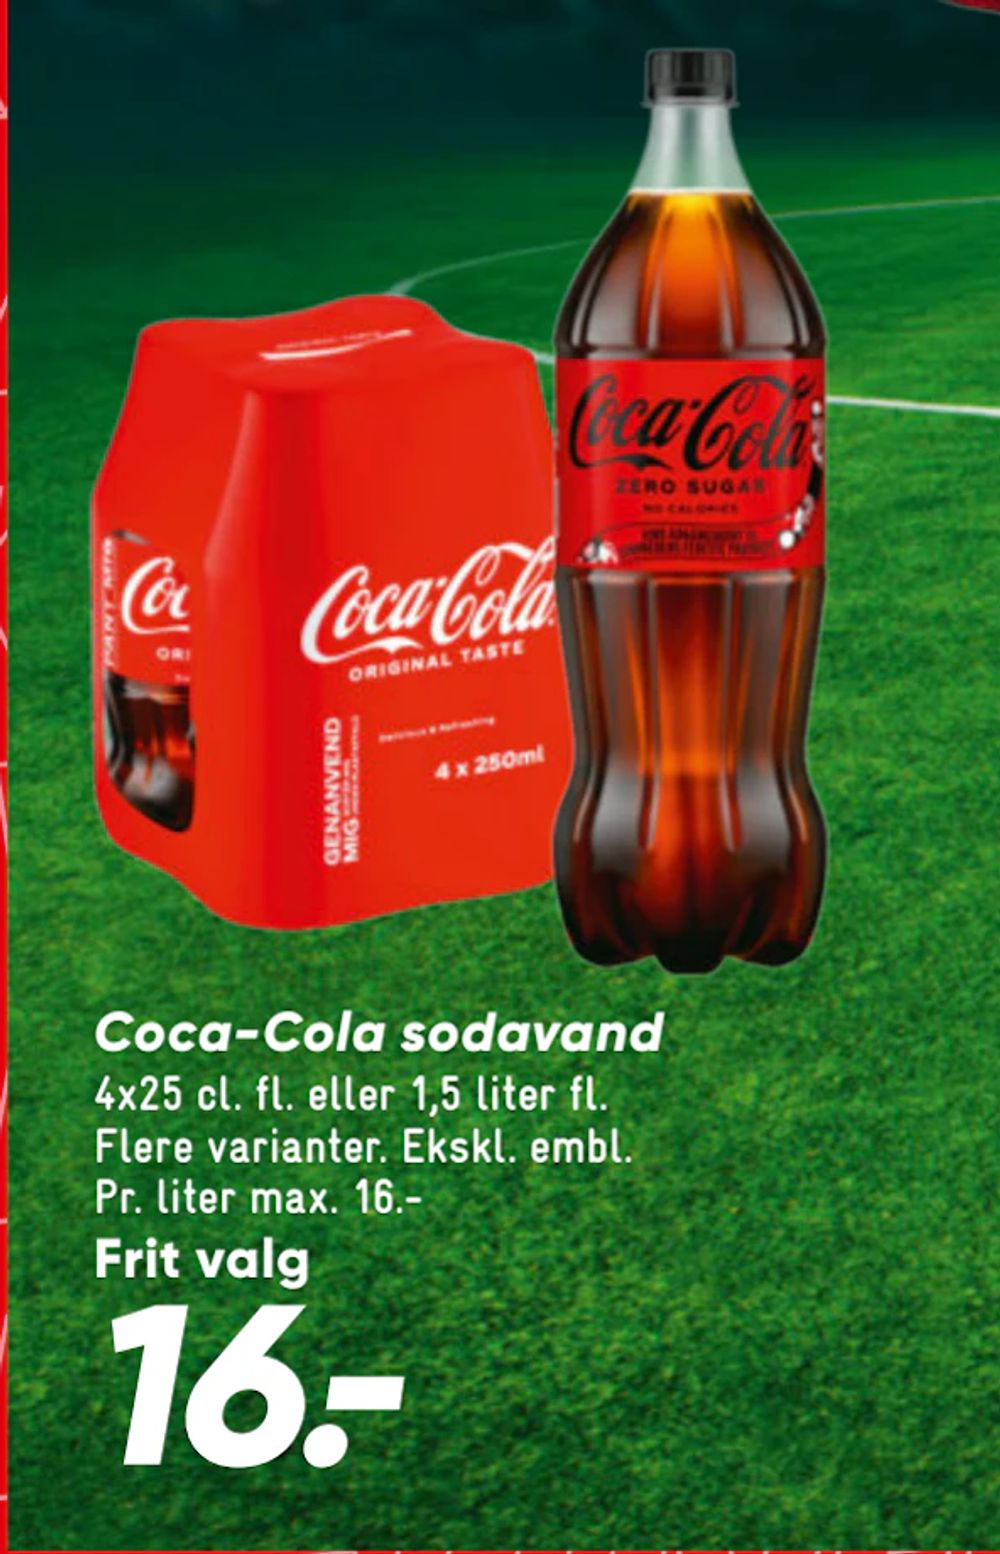 Tilbud på Coca-Cola sodavand fra Bilka til 16 kr.